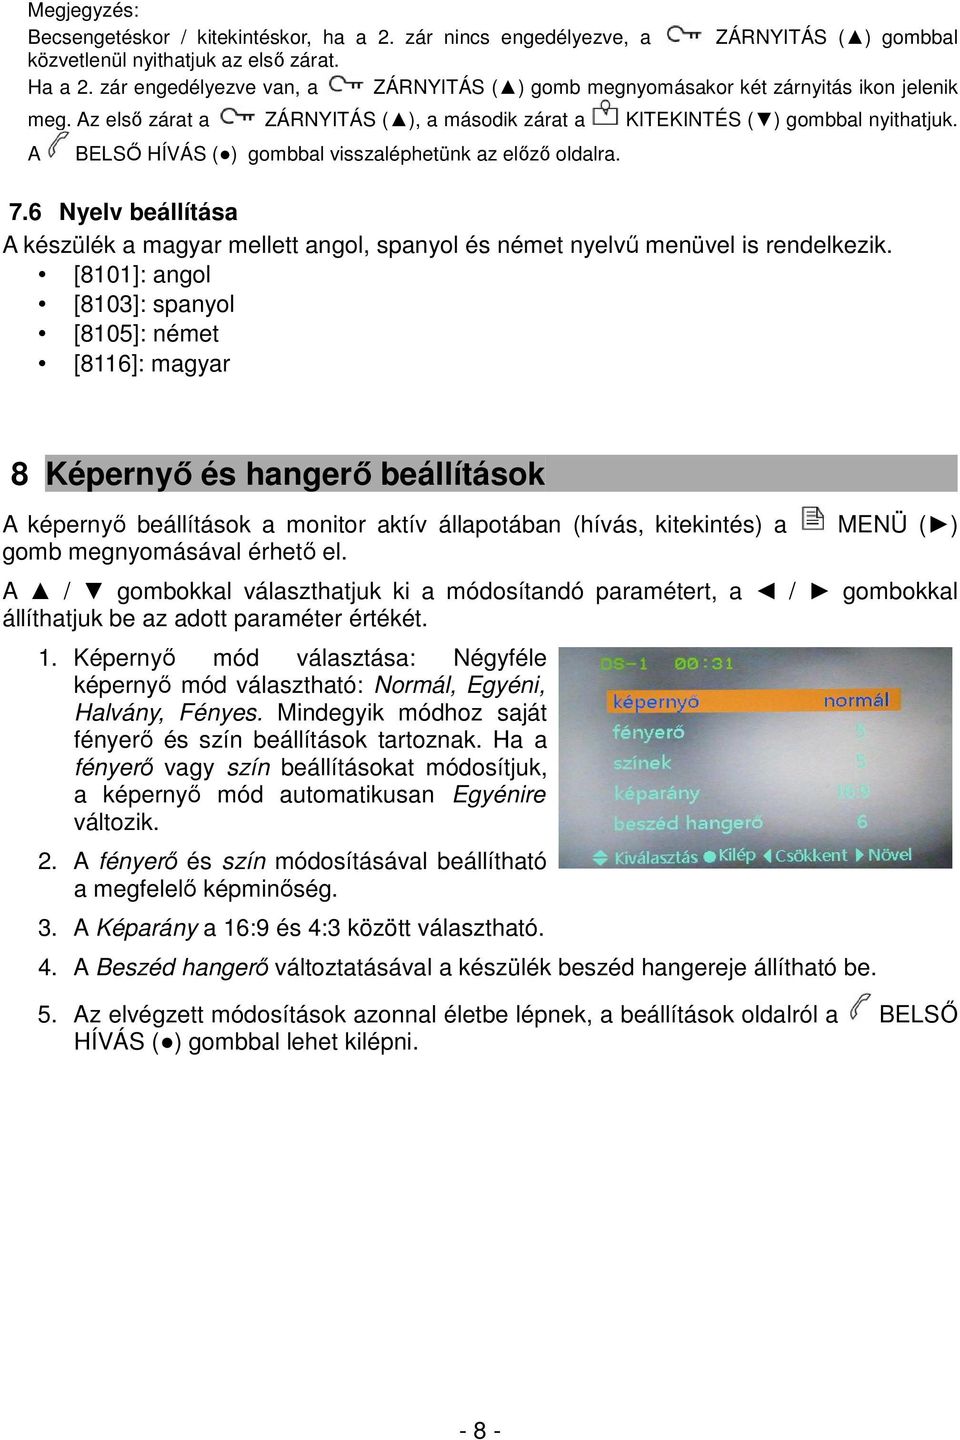 A BELSŐ HÍVÁS ( ) gombbal visszaléphetünk az előző oldalra. 7.6 Nyelv beállítása A készülék a magyar mellett angol, spanyol és német nyelvű menüvel is rendelkezik.